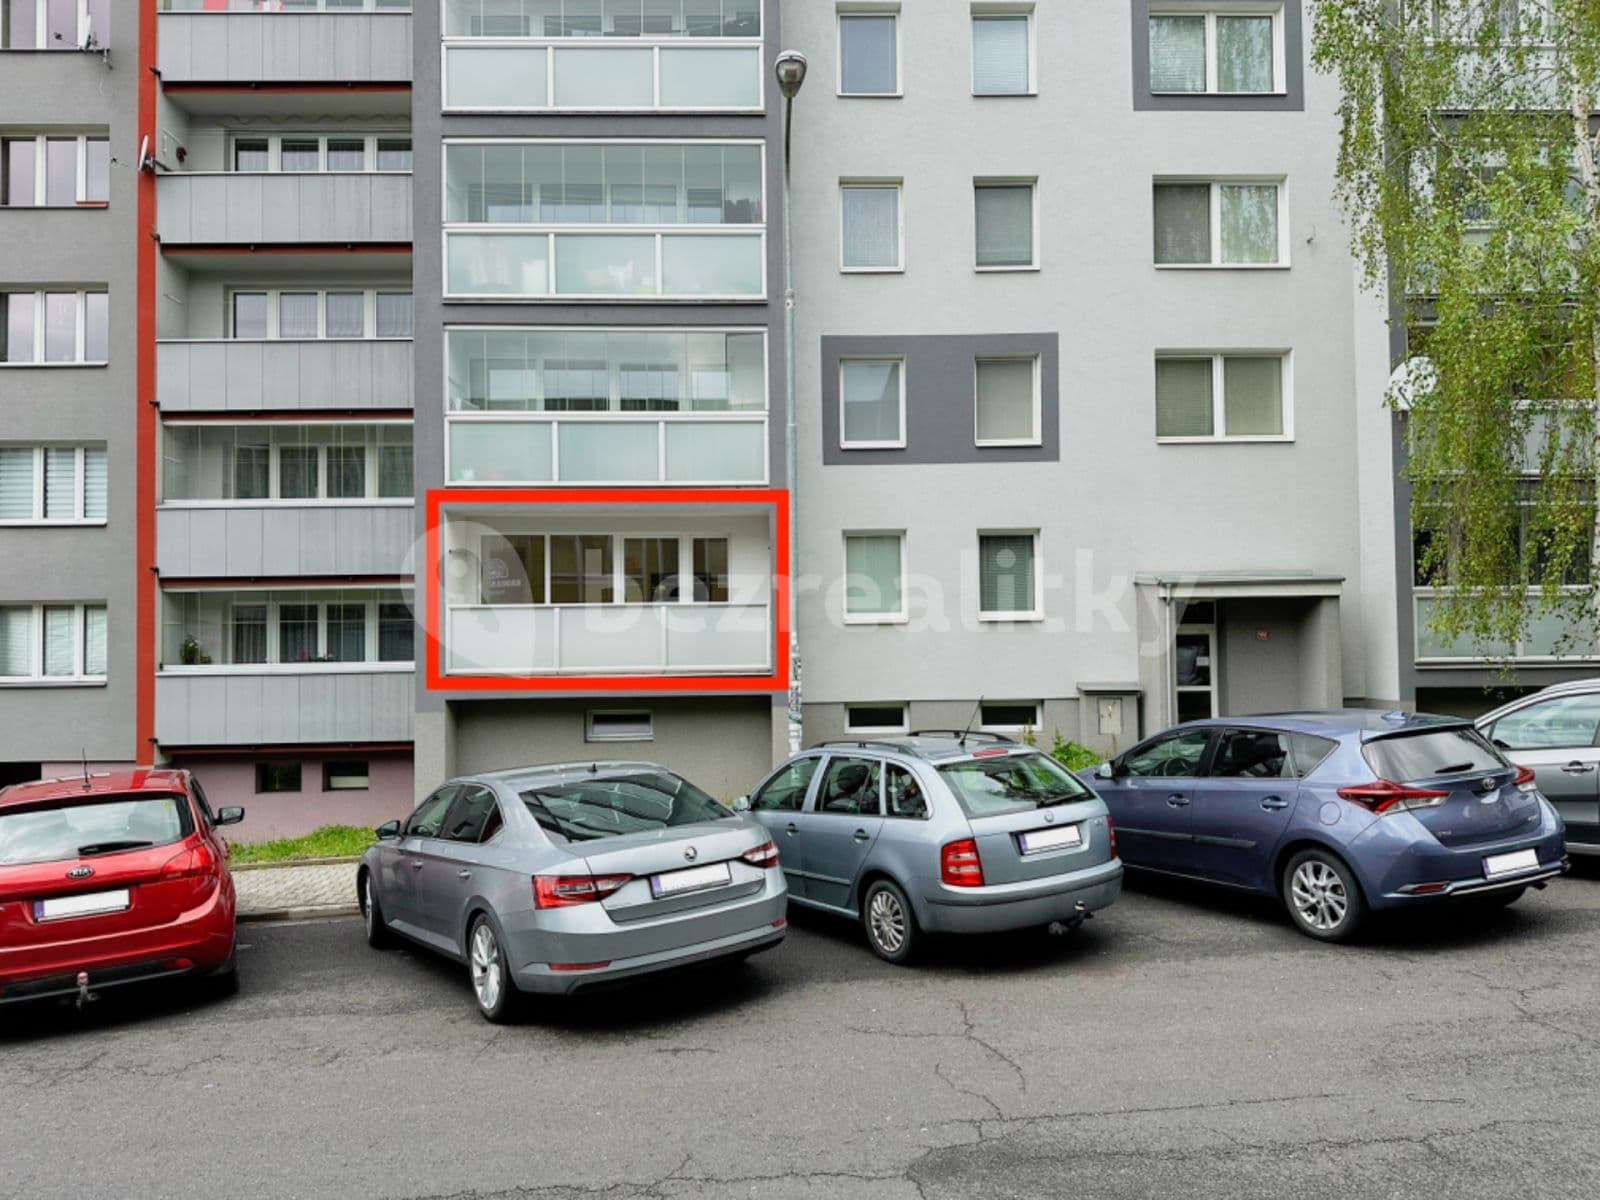 3 bedroom flat for sale, 71 m², Růžový pahorek, Frýdek-Místek, Moravskoslezský Region